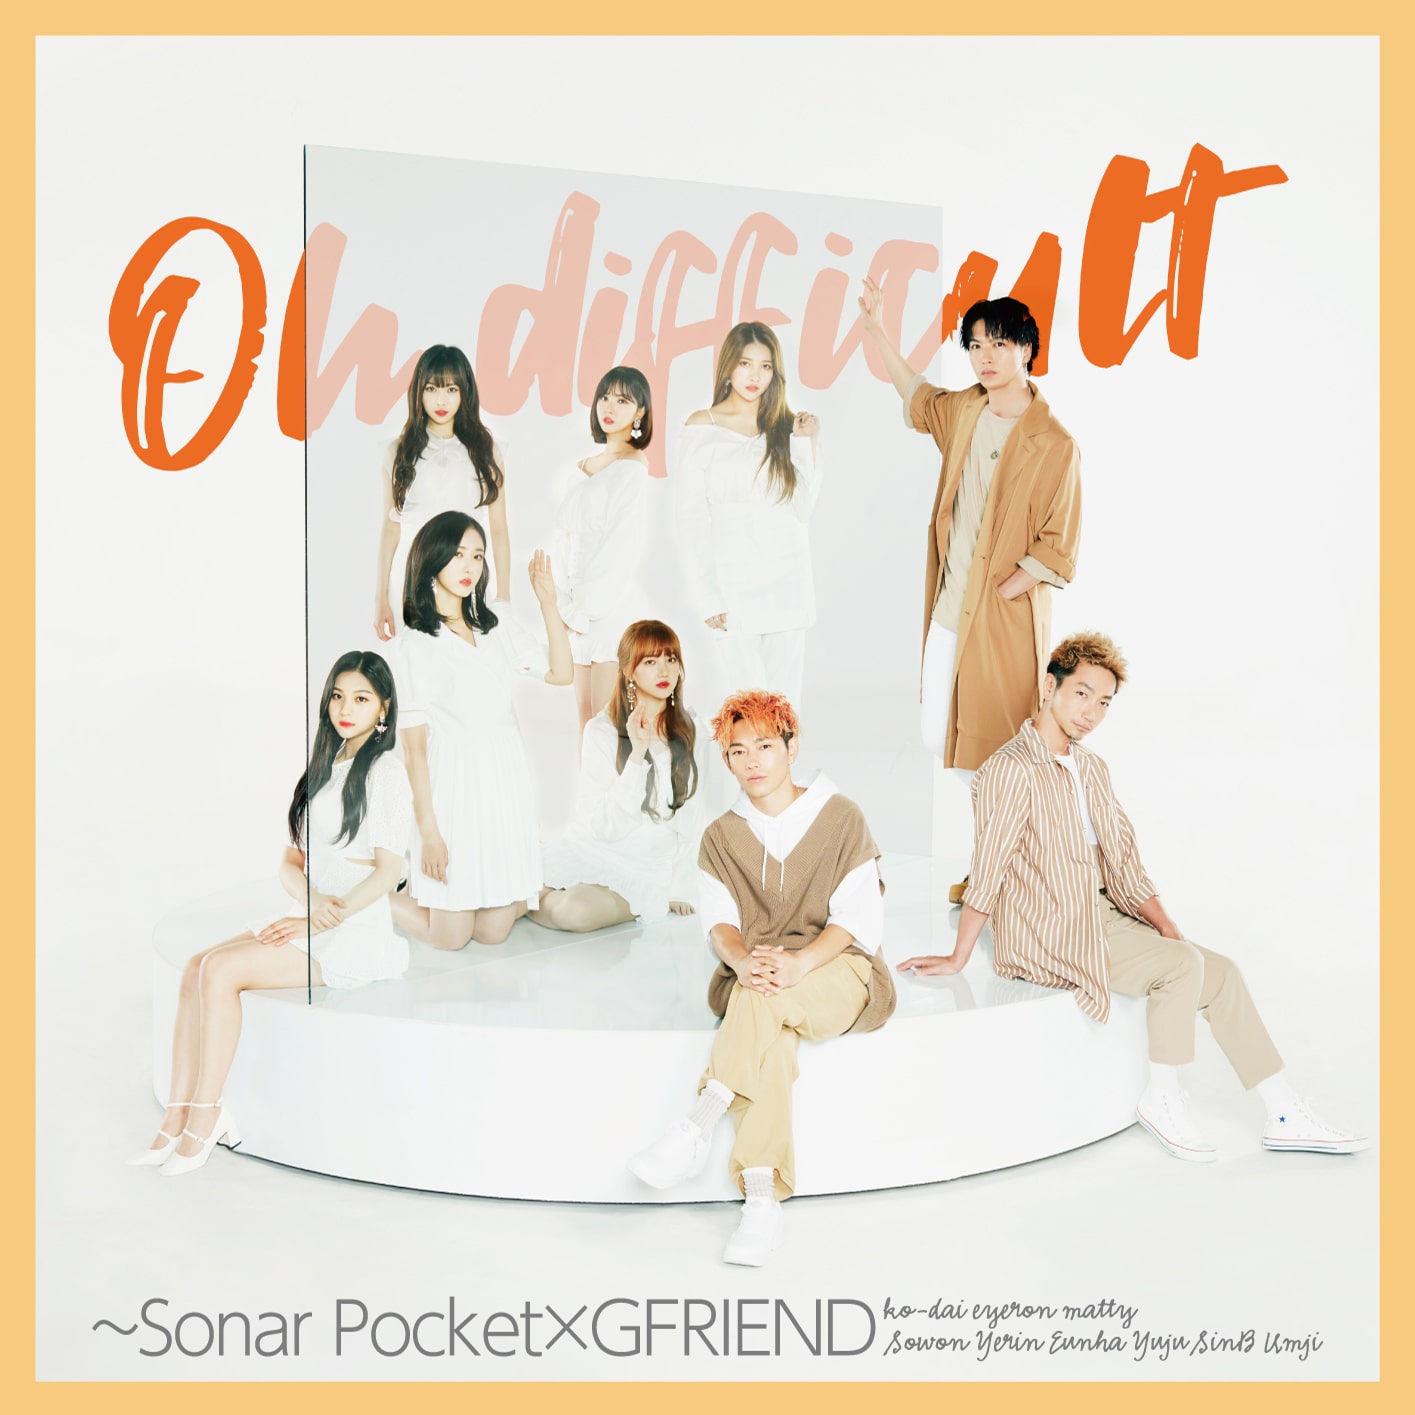 Sonar Pocket「Oh difficult ～Sonar Pocket×GFRIEND」